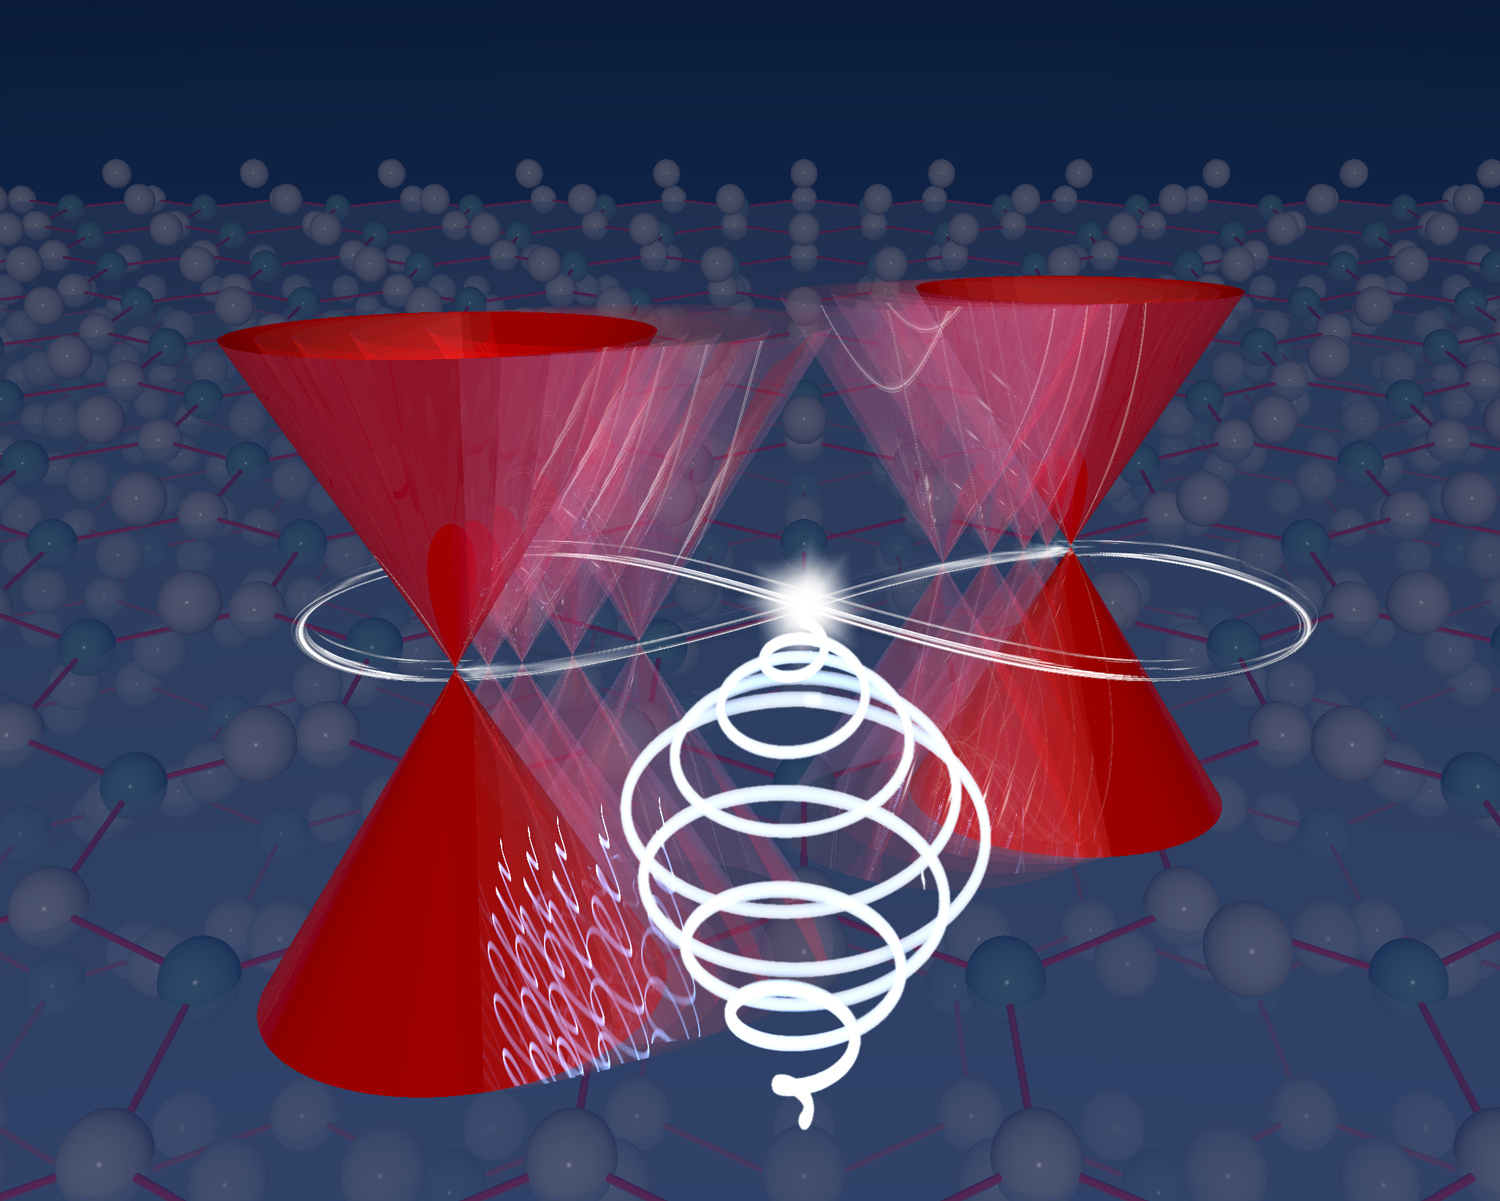 Laseranregung von Semimetallen ermöglicht die Erzeugung neuartiger Quasiteilchen in Festkörpersystemen